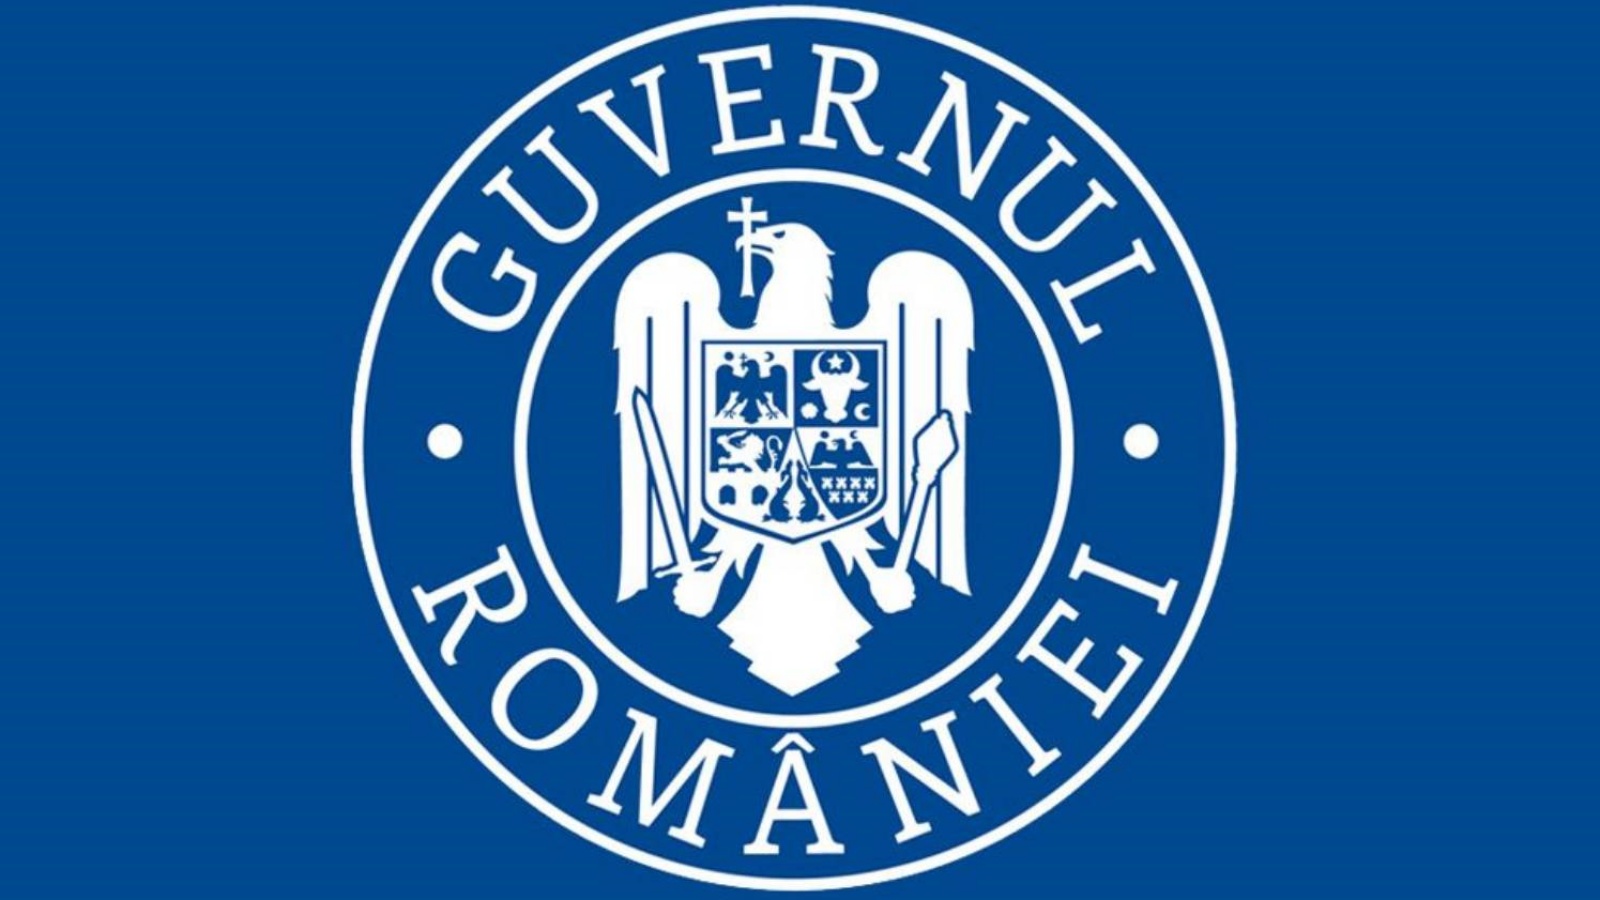 Romanian hallitus ilmoittaa terveysalan ammattiliittojen päätökset